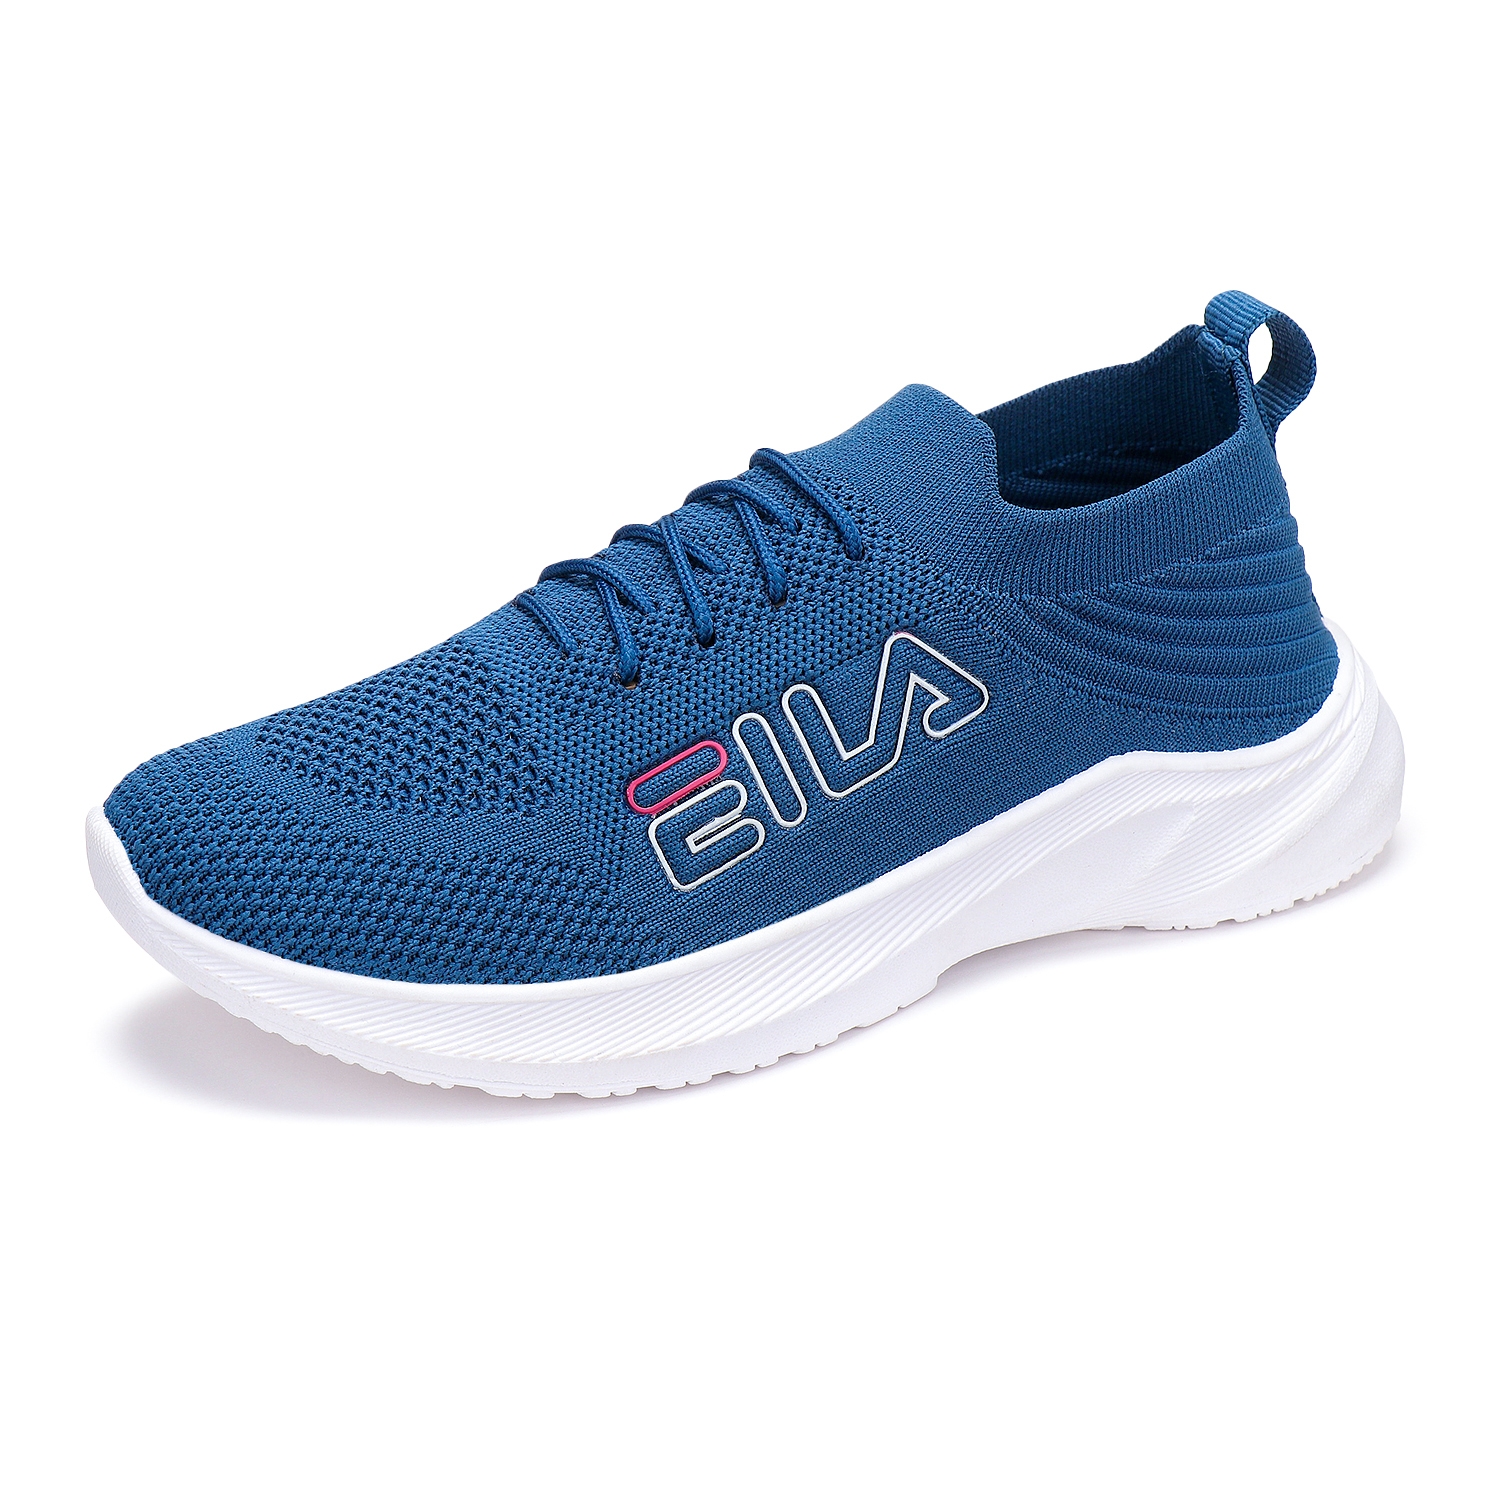 Women's Blue Running Shoes